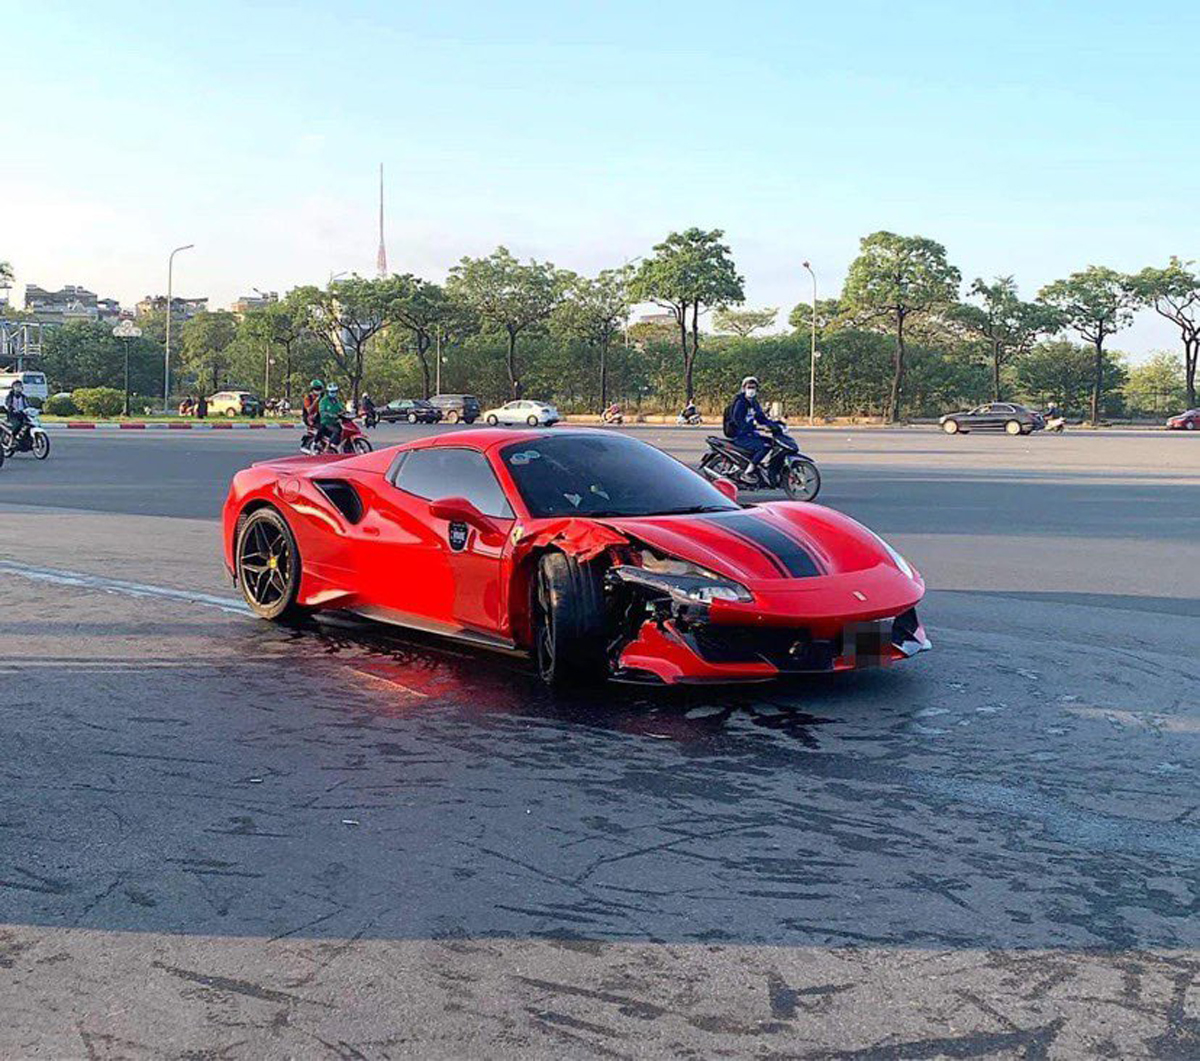 Hiện trường vụ siêu xe Ferrari va chạm với xe máy khiến 1 thiệt mạng - 5